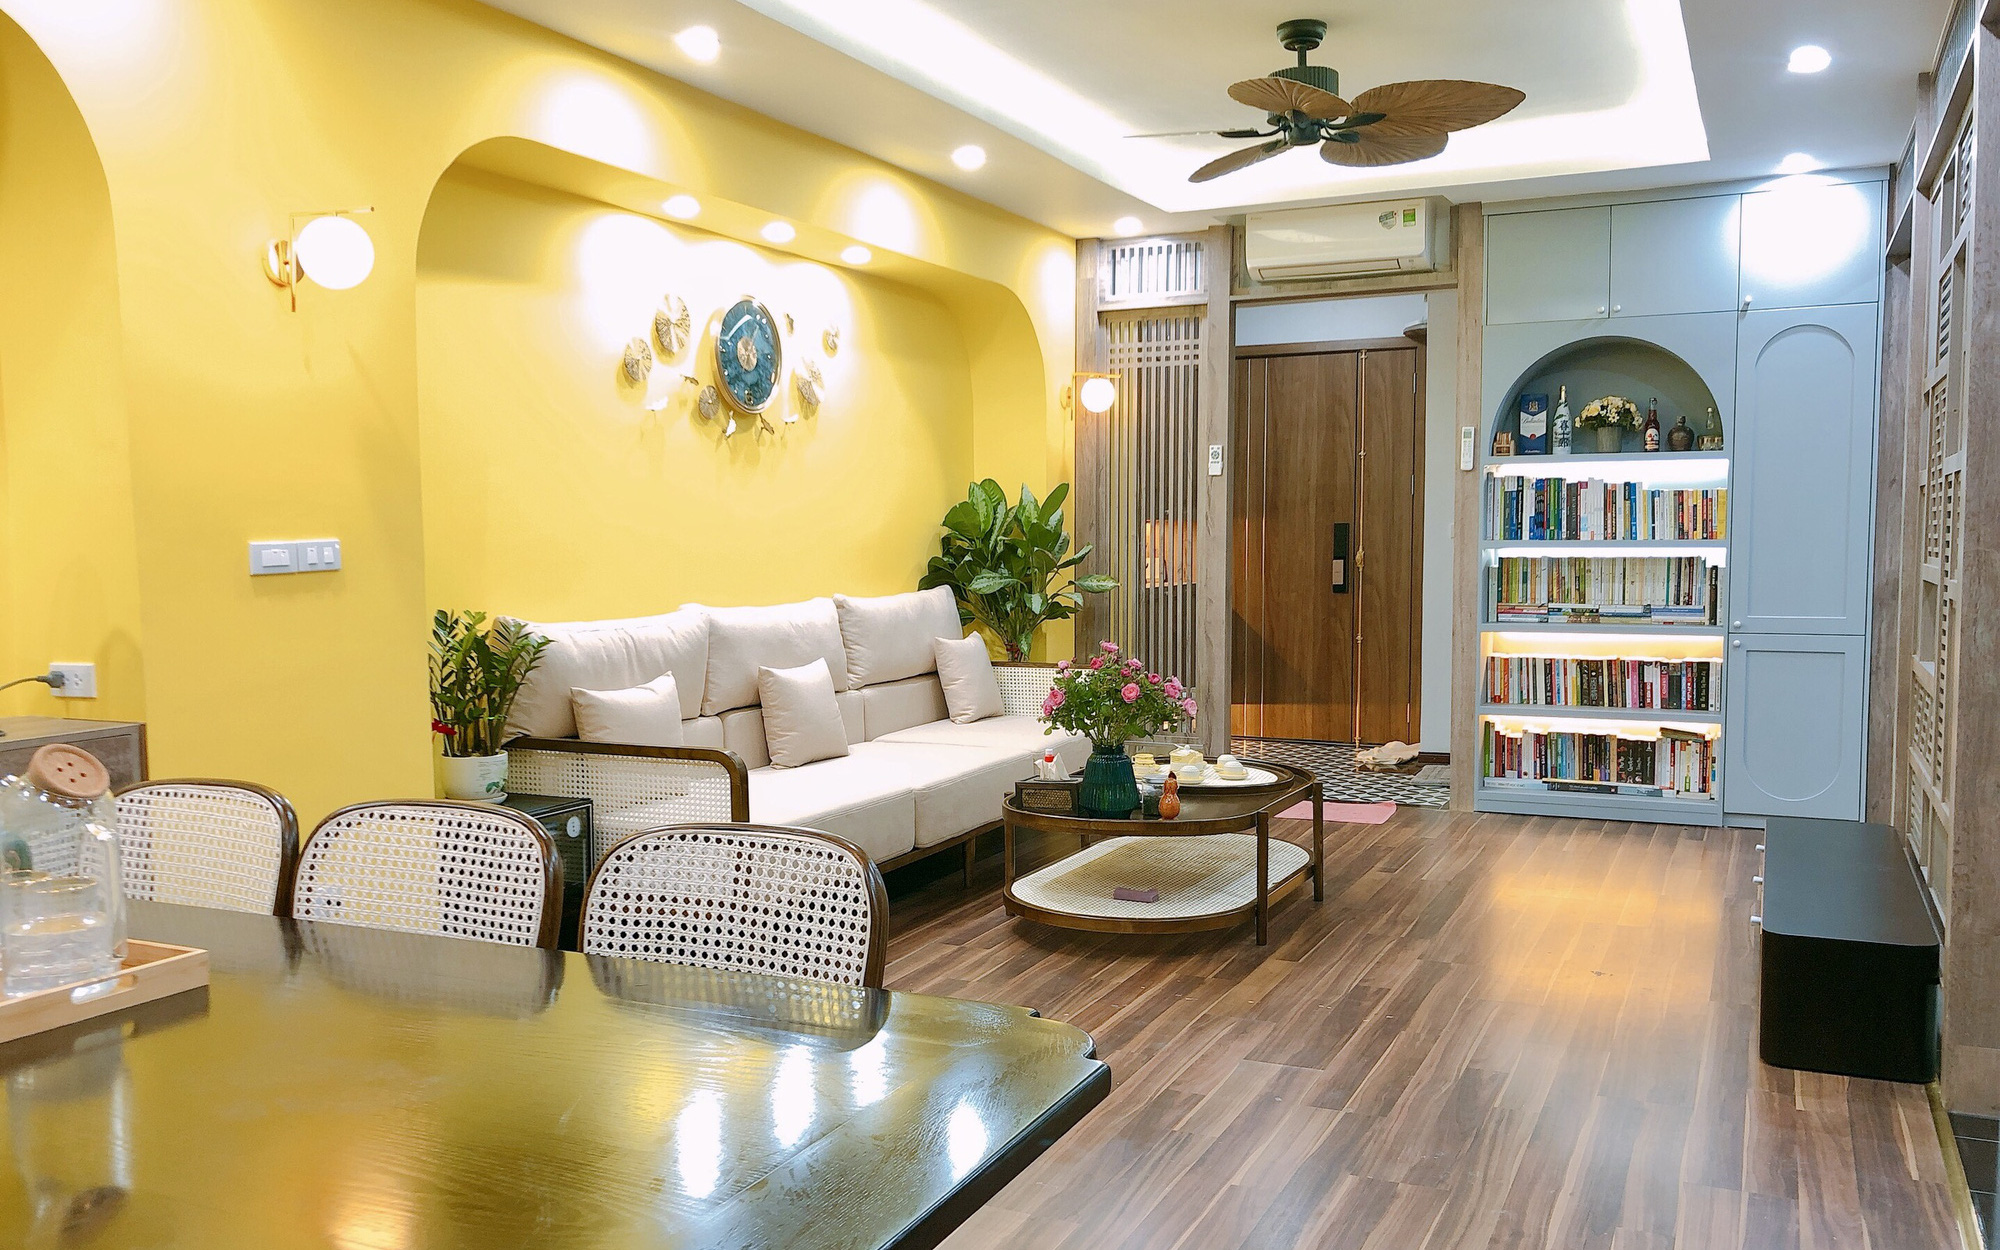 Cặp vợ chồng chi gần 1 tỷ để cải tạo lại căn hộ 138m² ở Hà Nội với gam màu vàng vô cùng bắt mắt